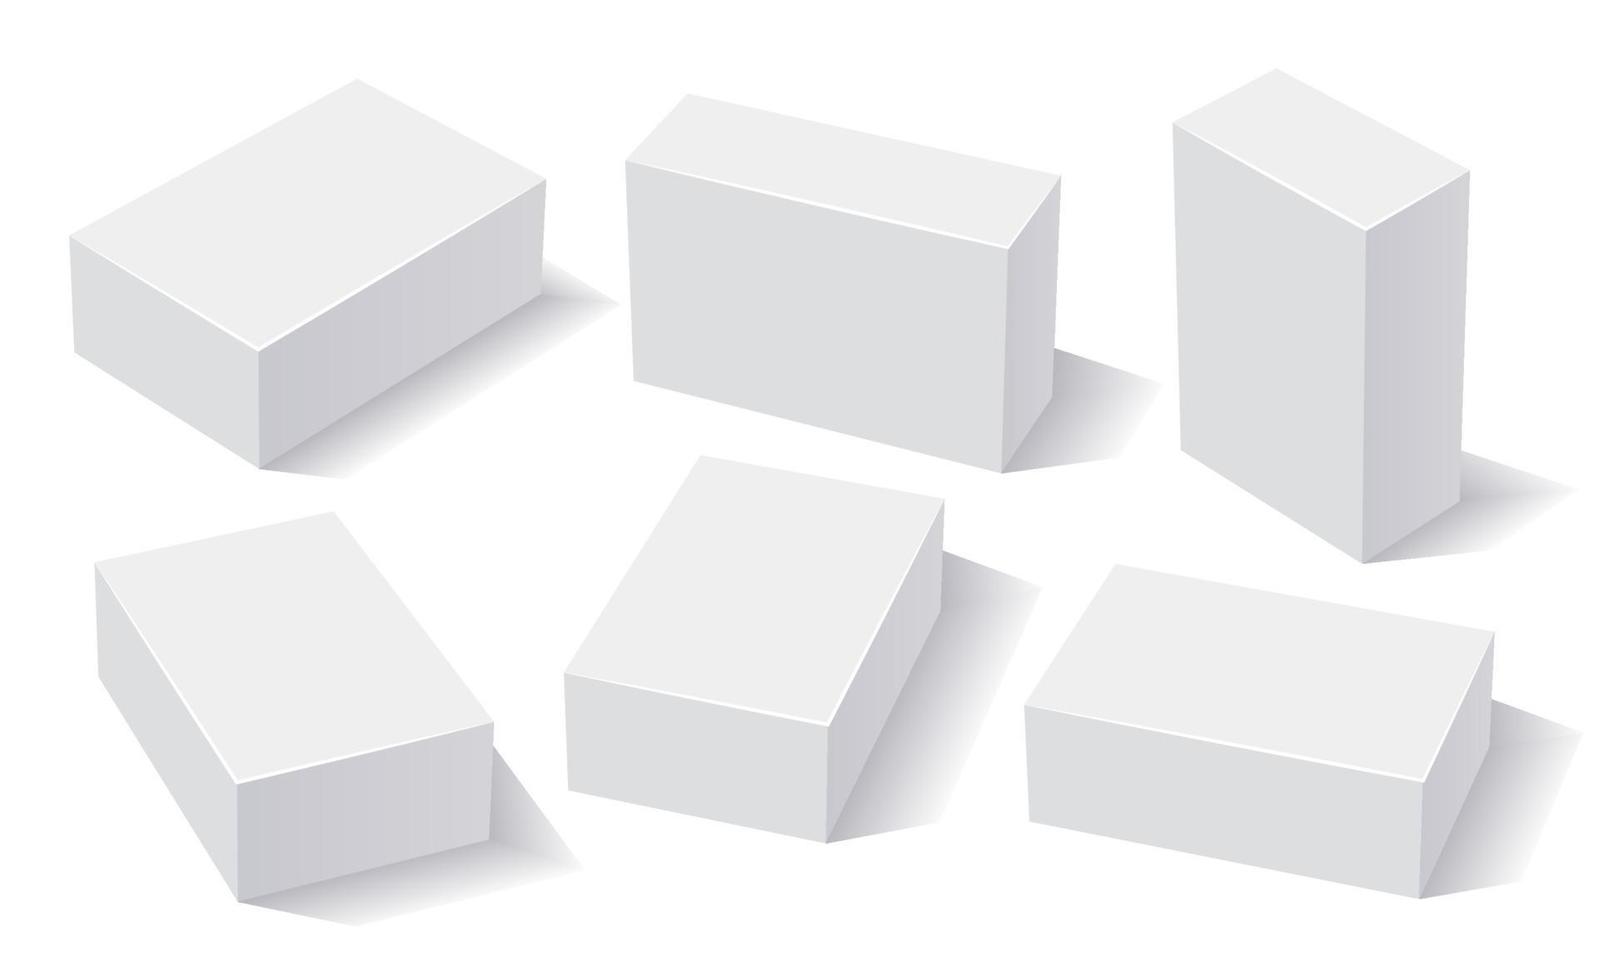 rechthoek witte dozen, 3D-rendering met schaduwen. dozenset voor verpakking en brandingontwerp, mockupdozen in verschillende posities. vector